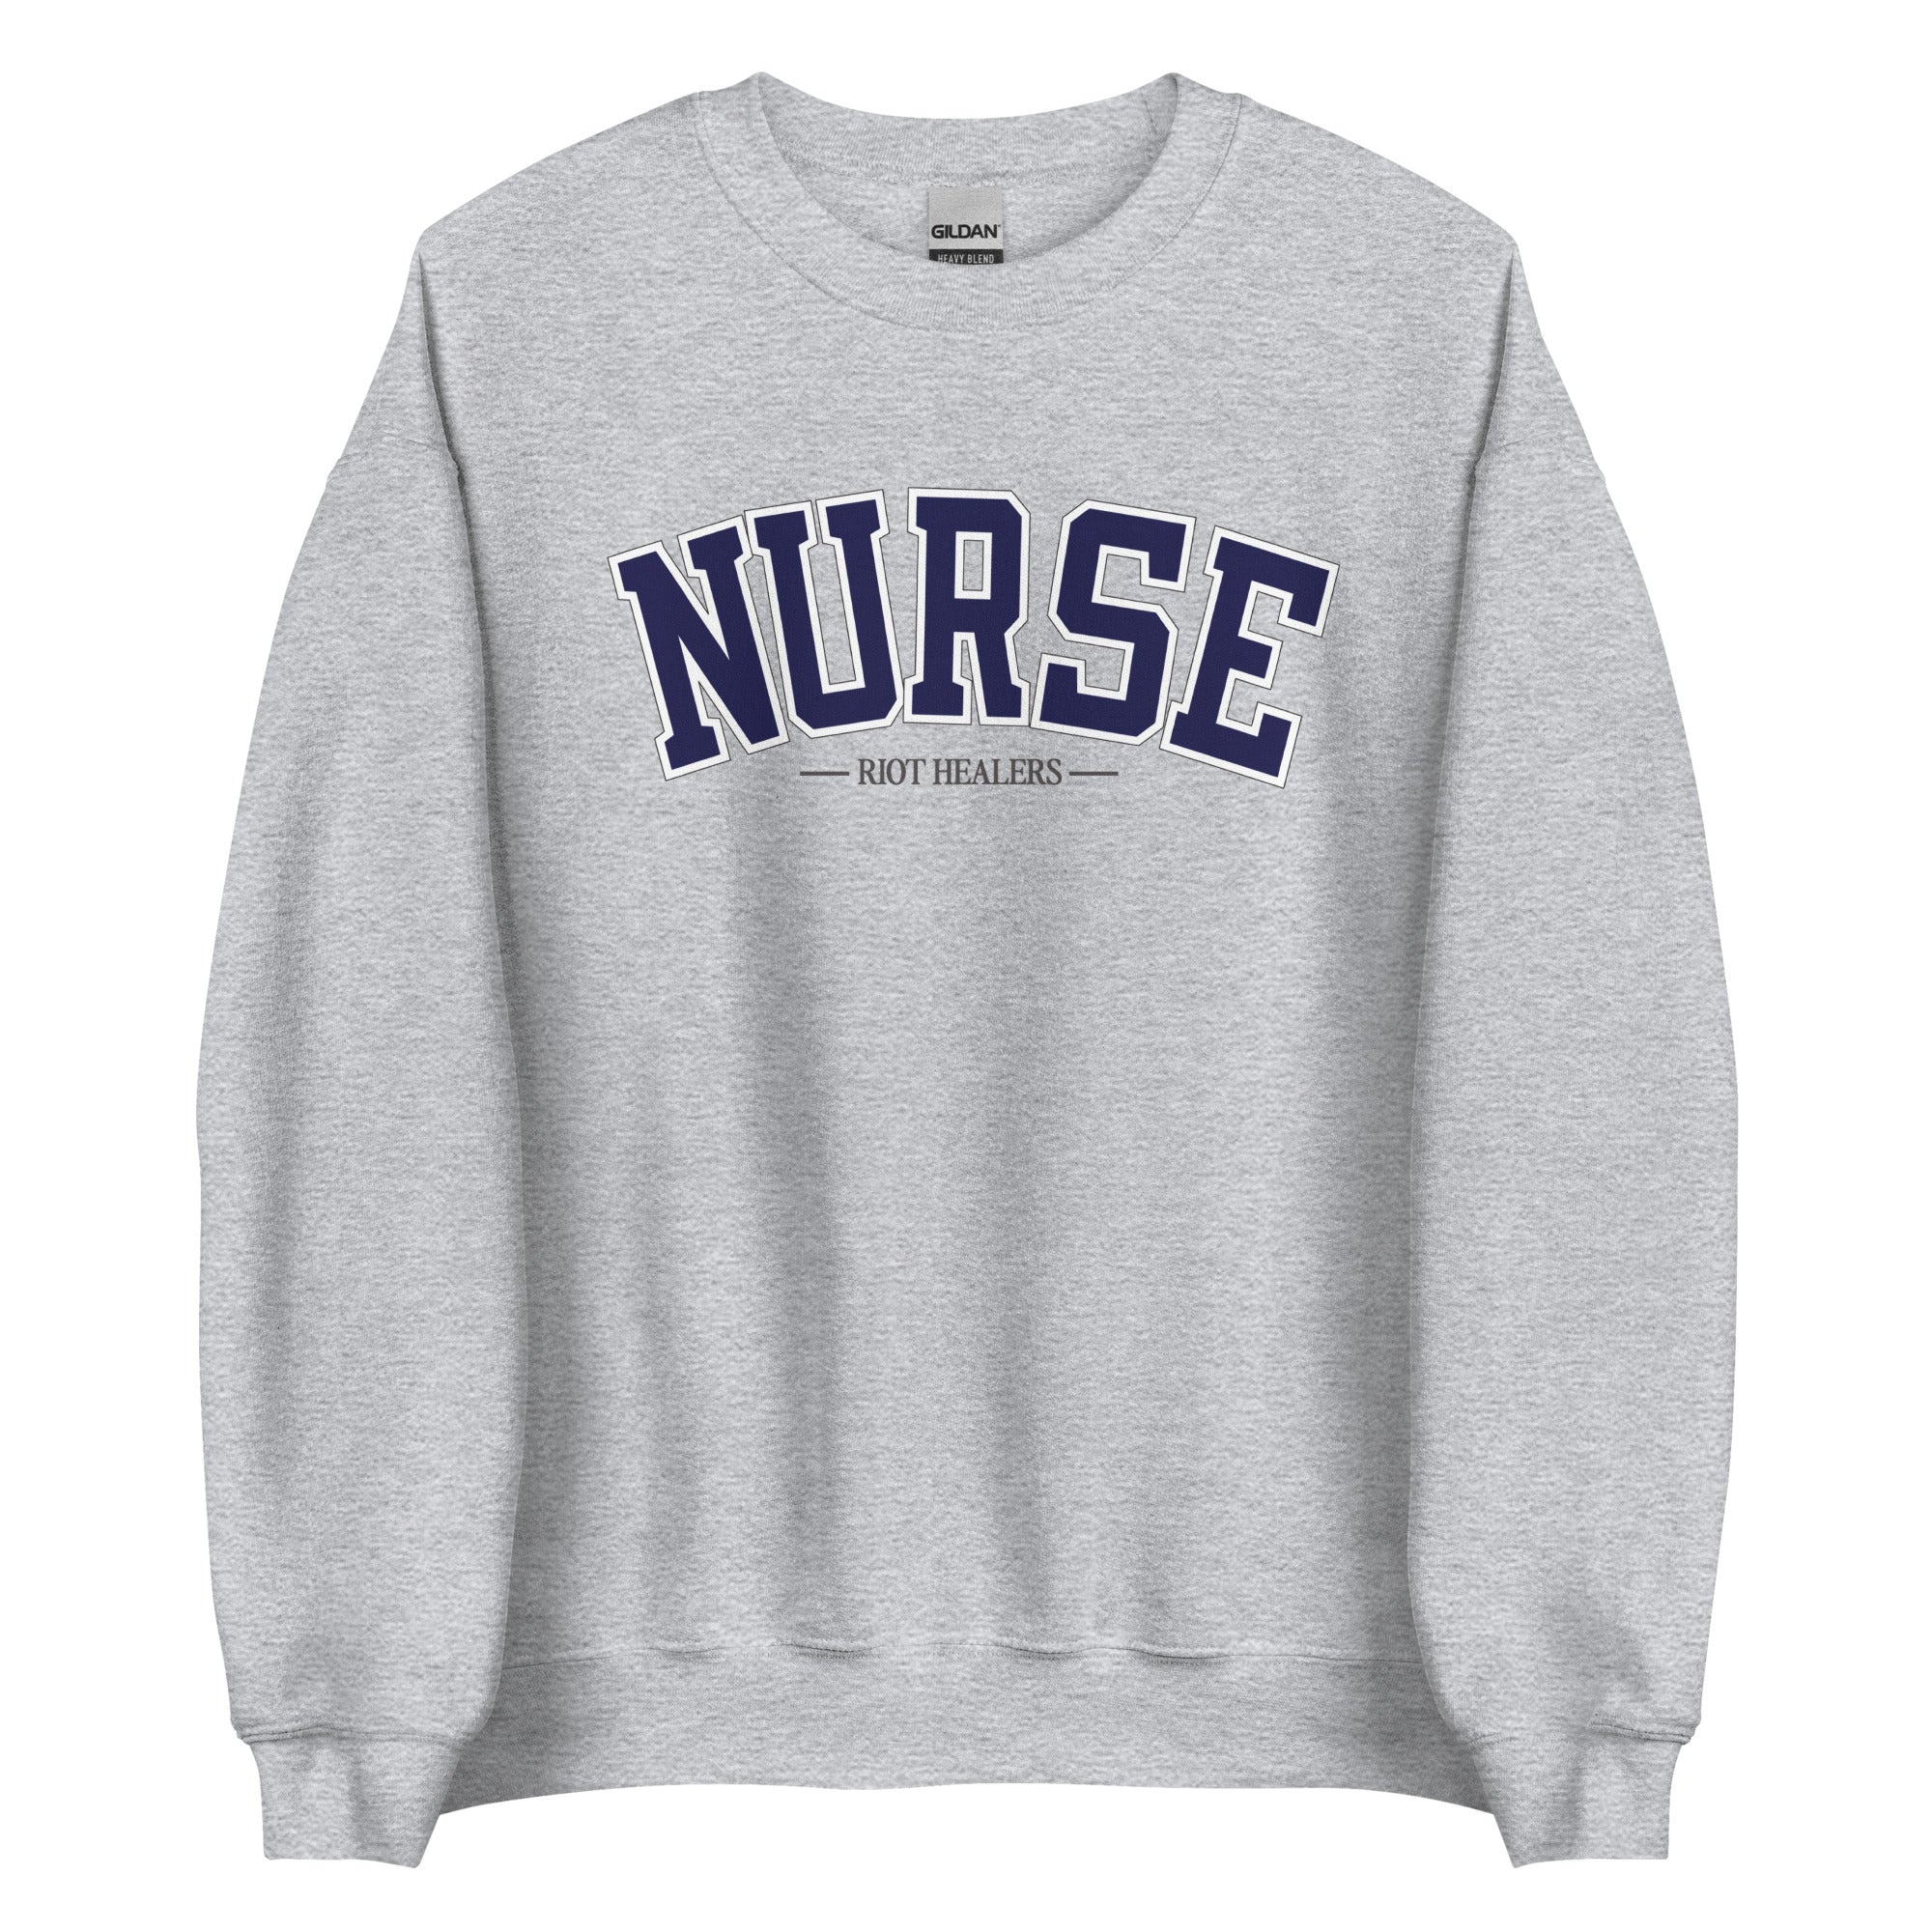 Nurse Collegiate Crewneck - Grey & Navy